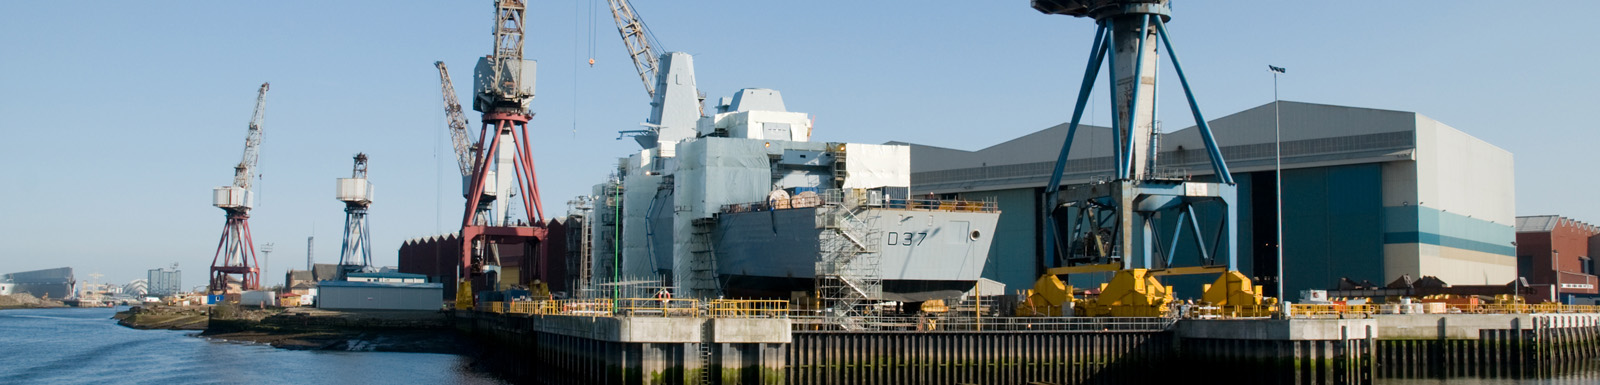 BAE Systems shipyard in Govan